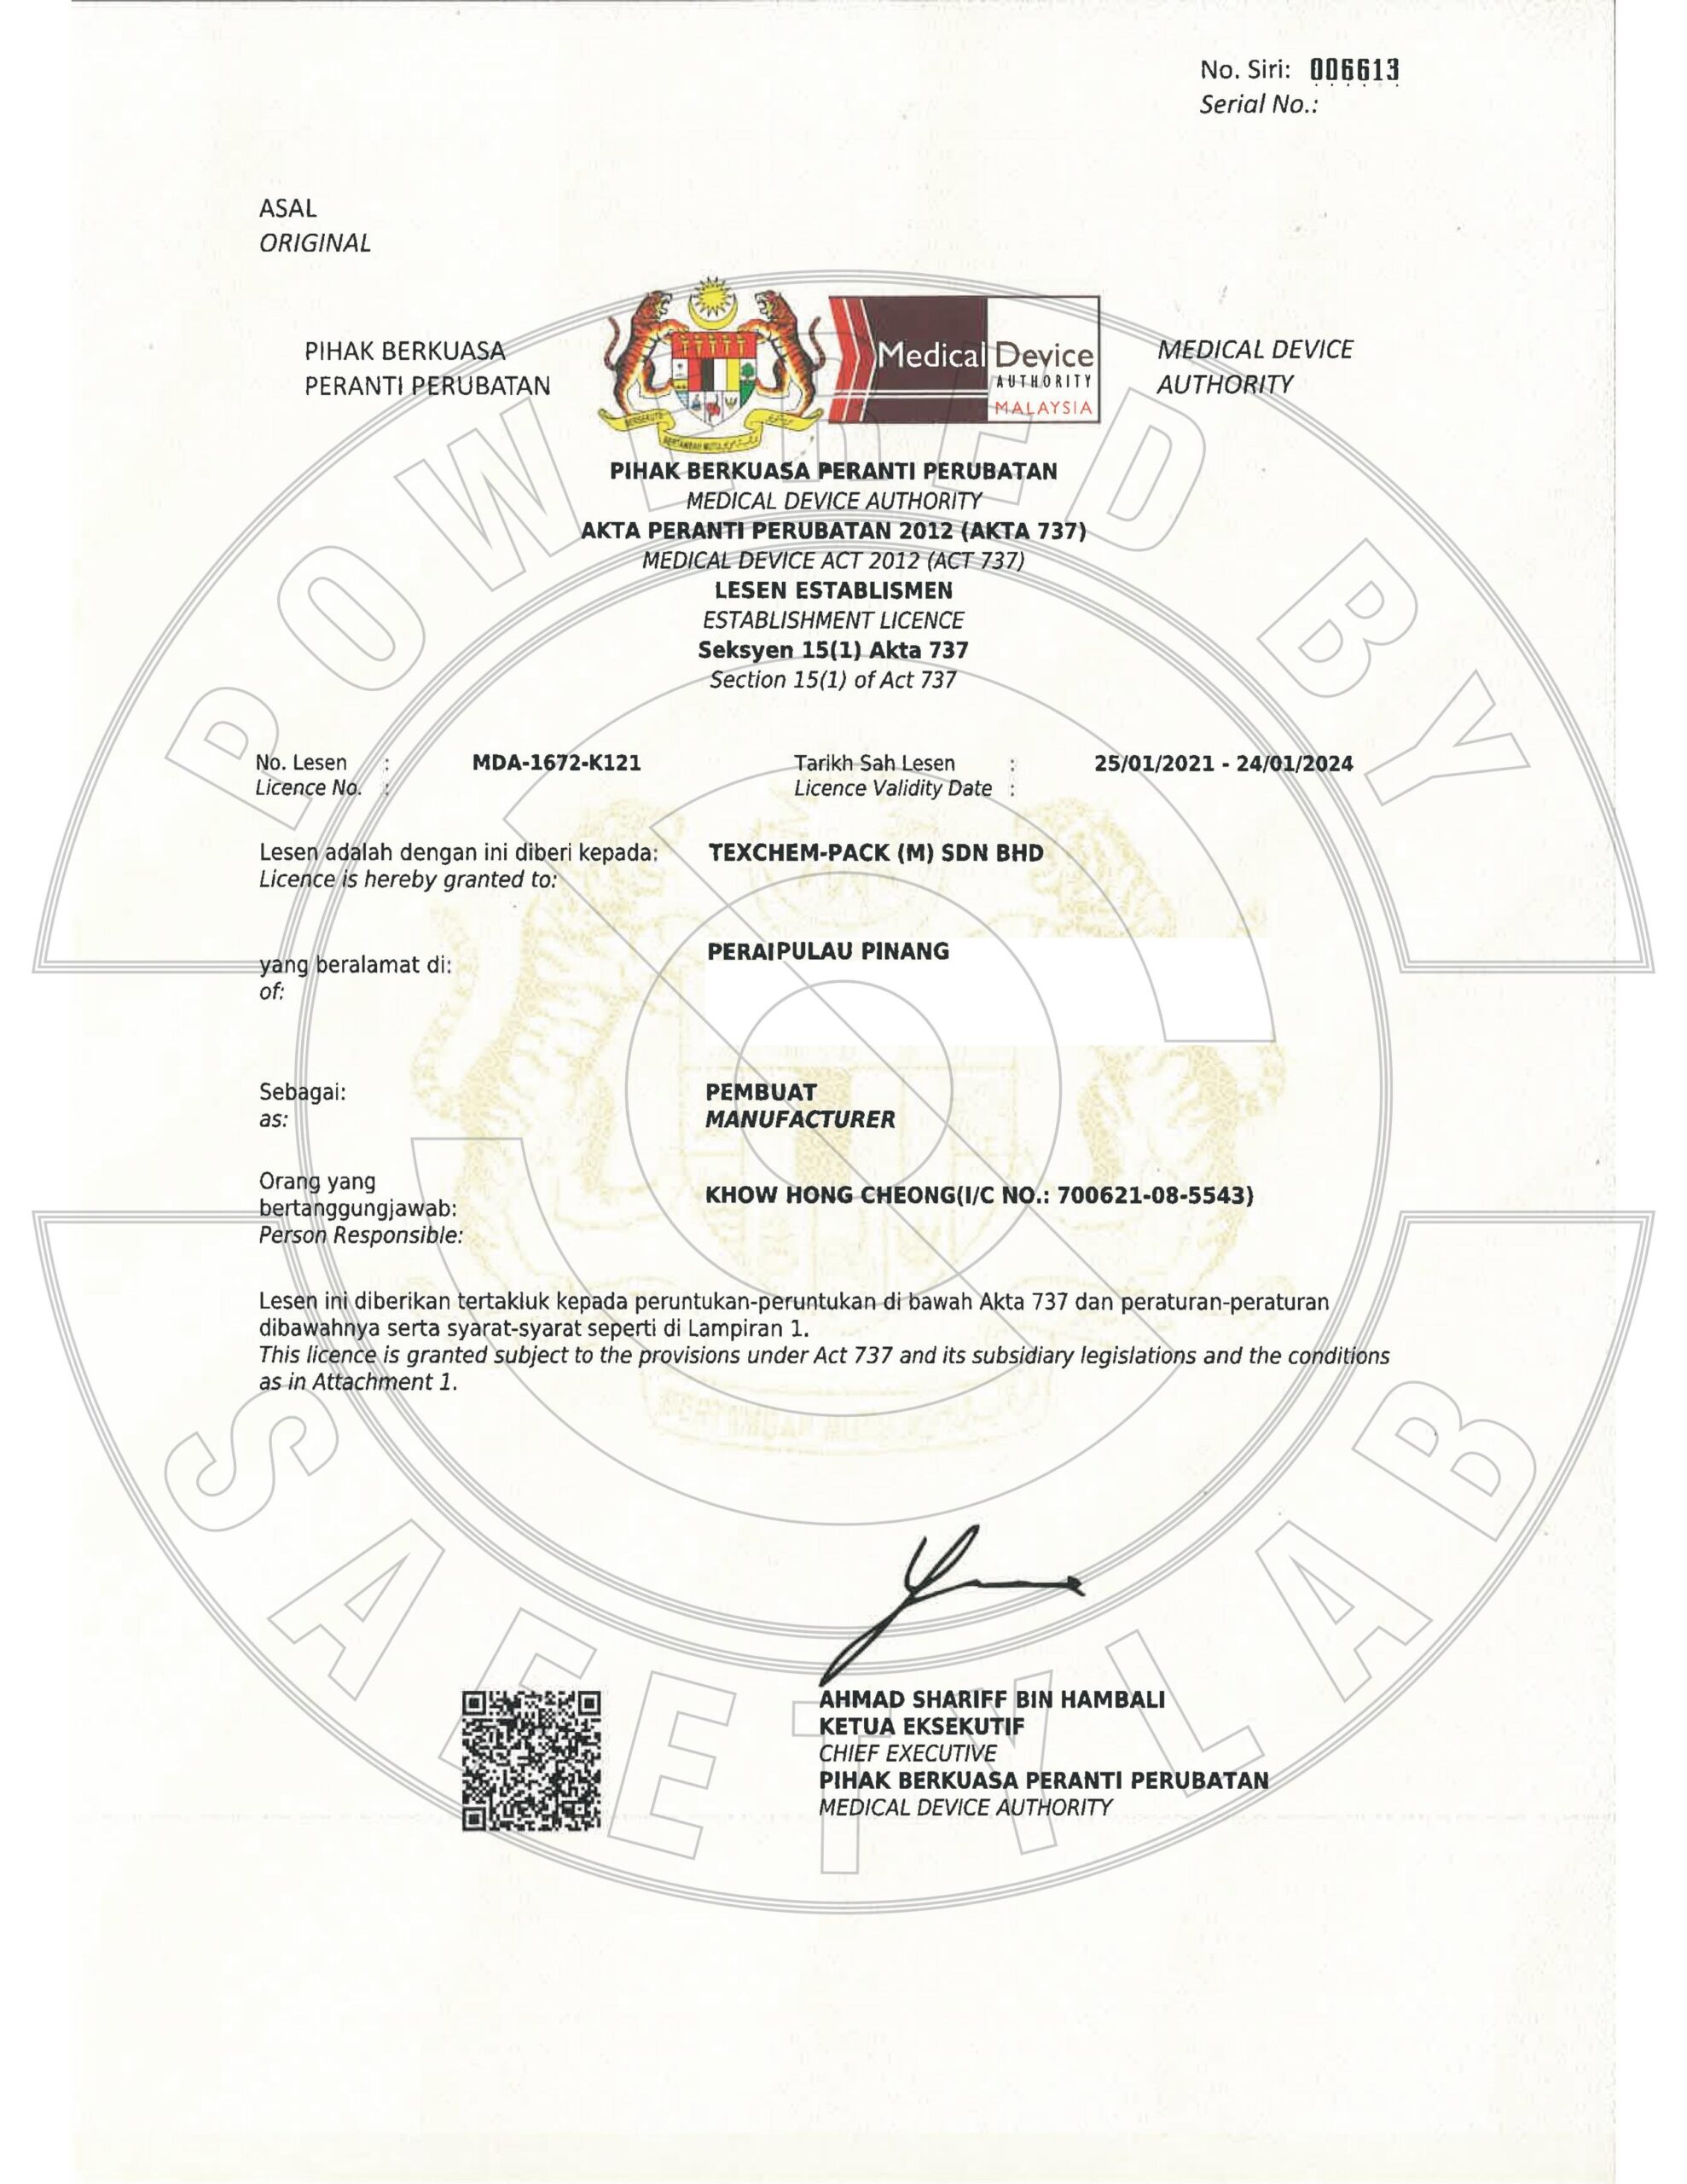 TexChem MDA Certificate